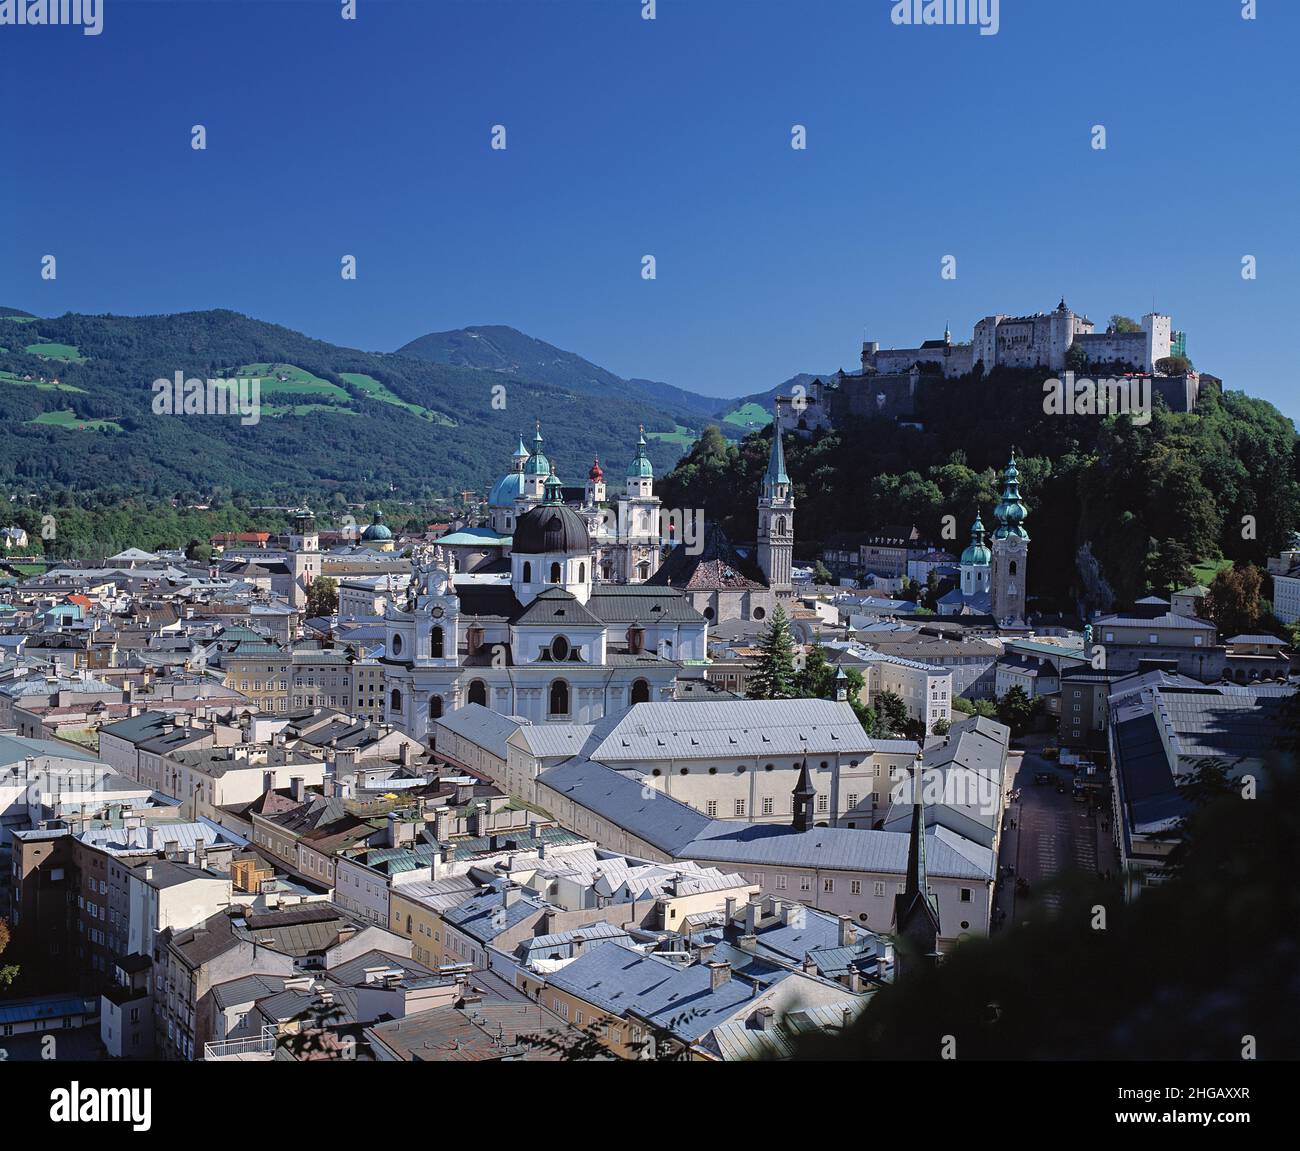 Autriche.Salzbourg.Vue sur la vieille ville avec la forteresse de Hohensalzburg au sommet d'une colline. Banque D'Images